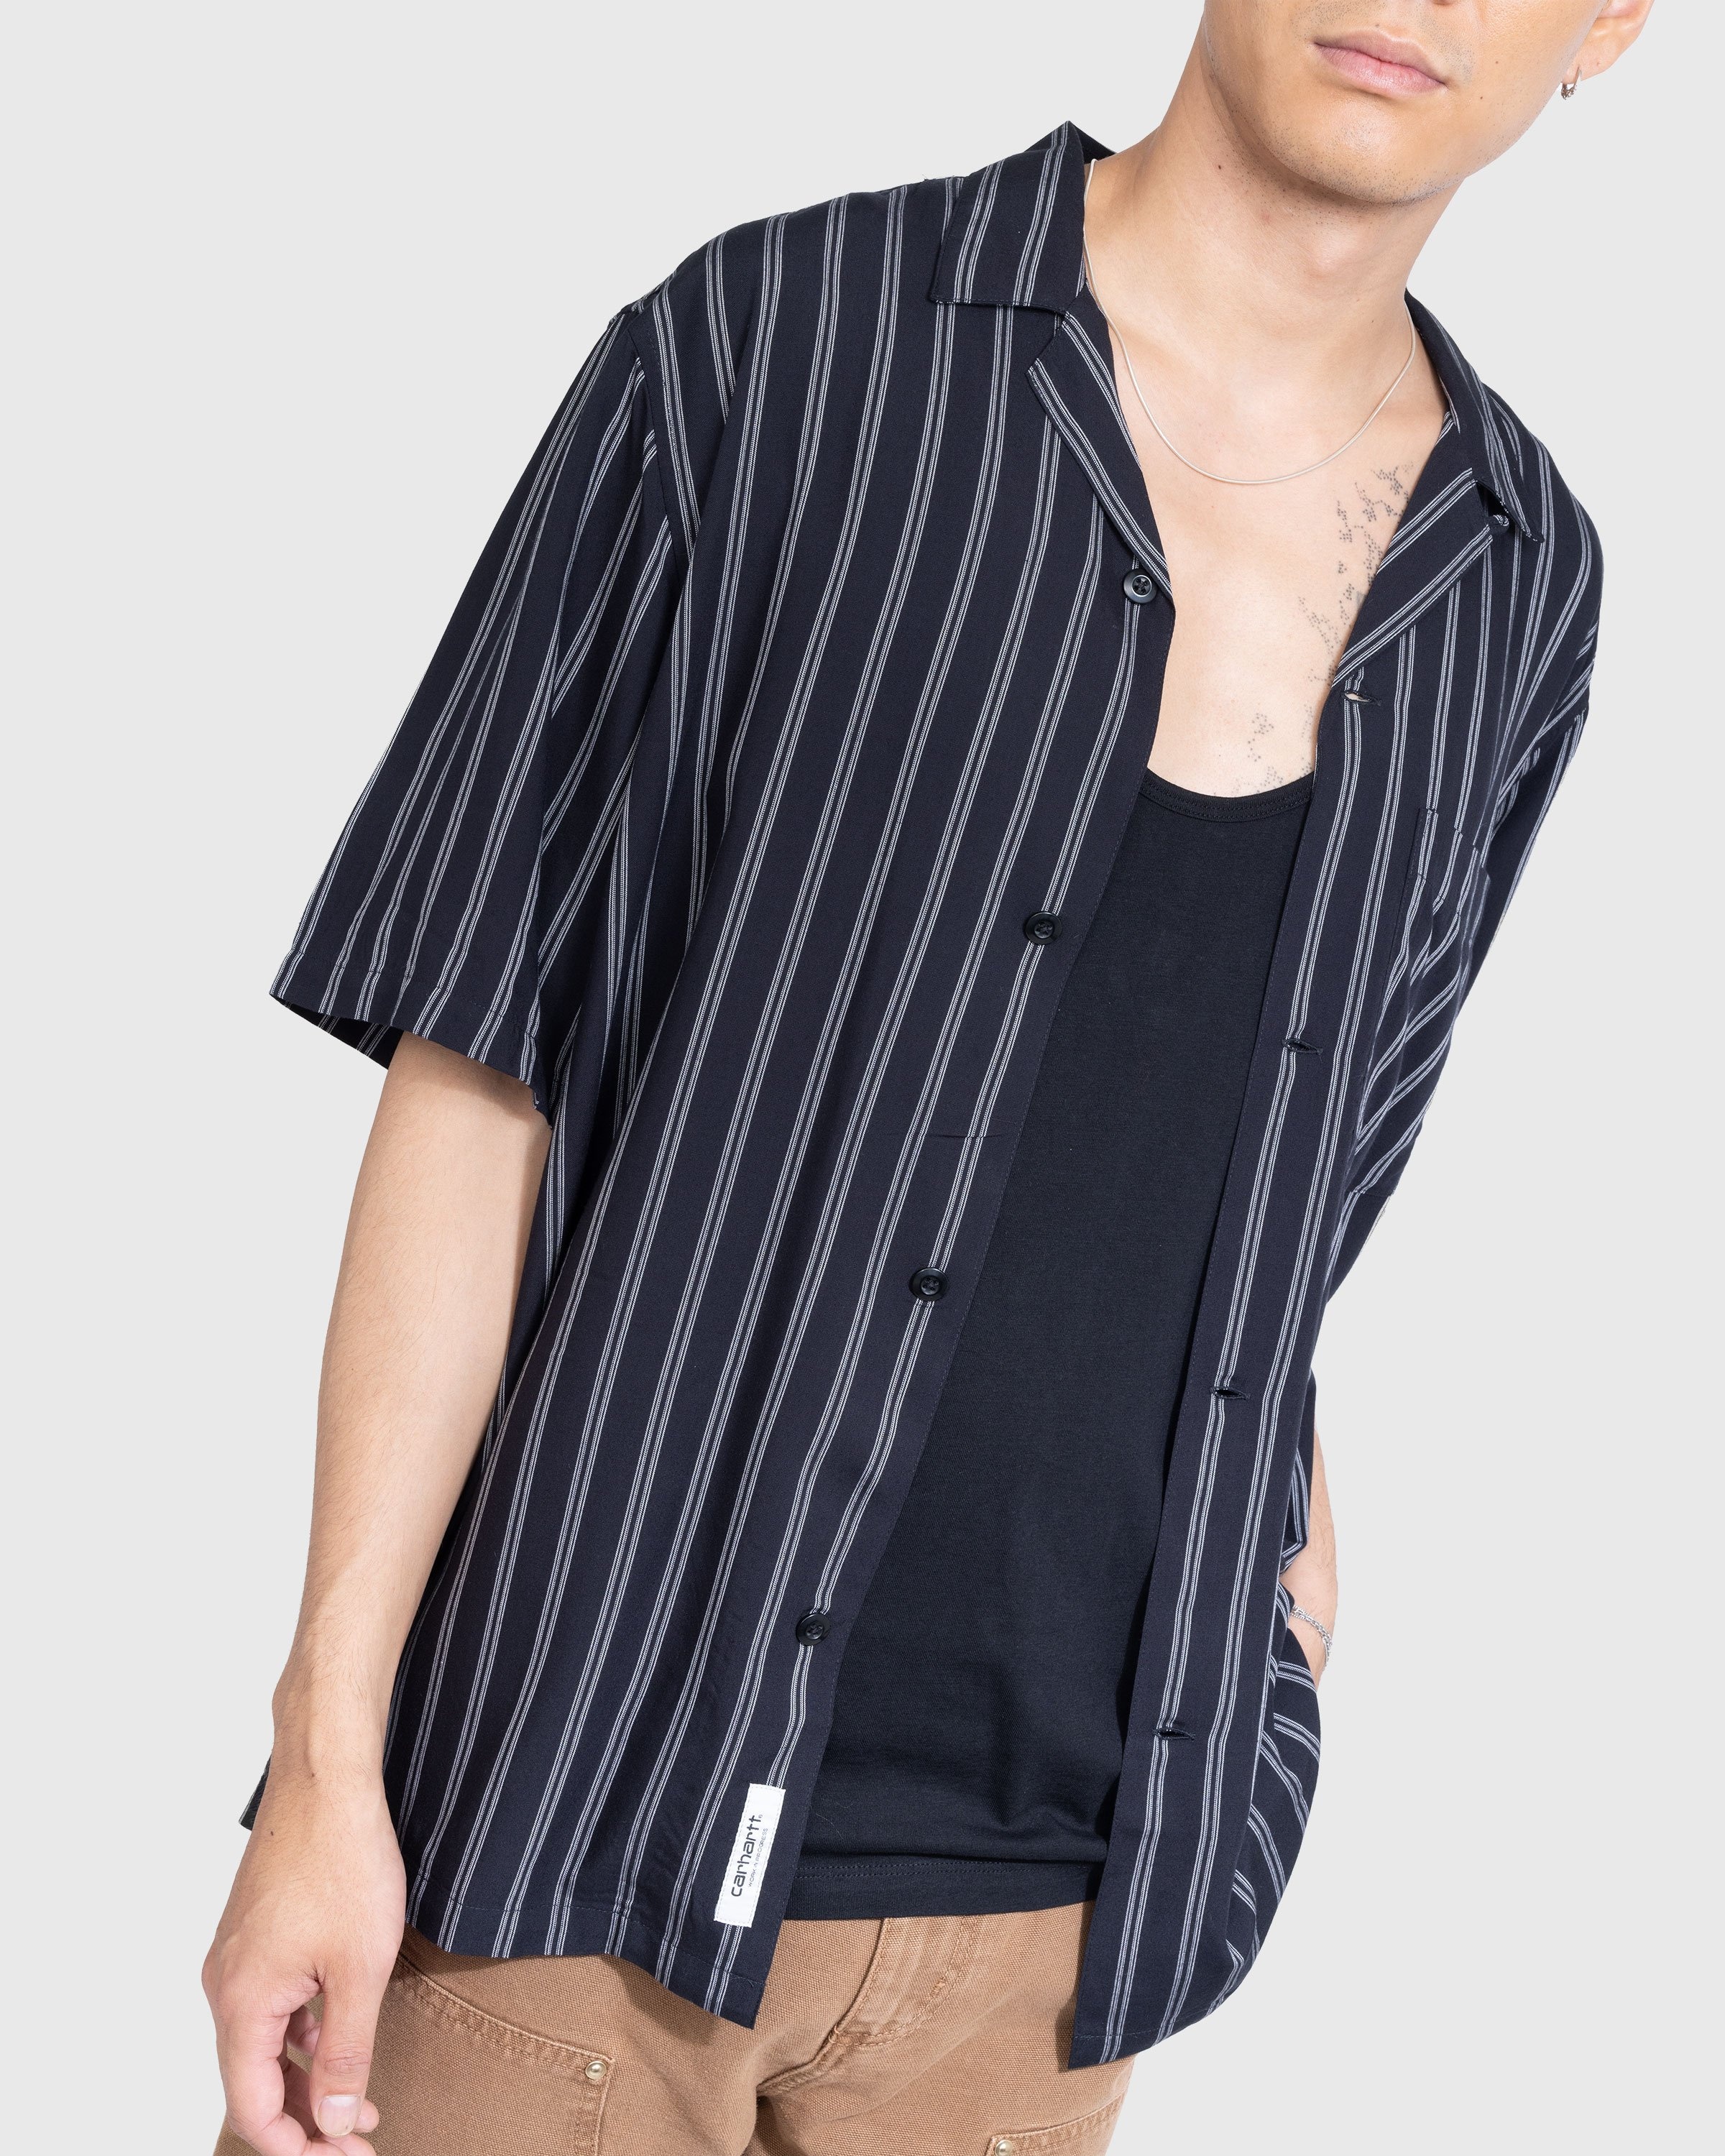 Carhartt WIP – Reyes Stripe Shirt Black - Shirts - Black - Image 3